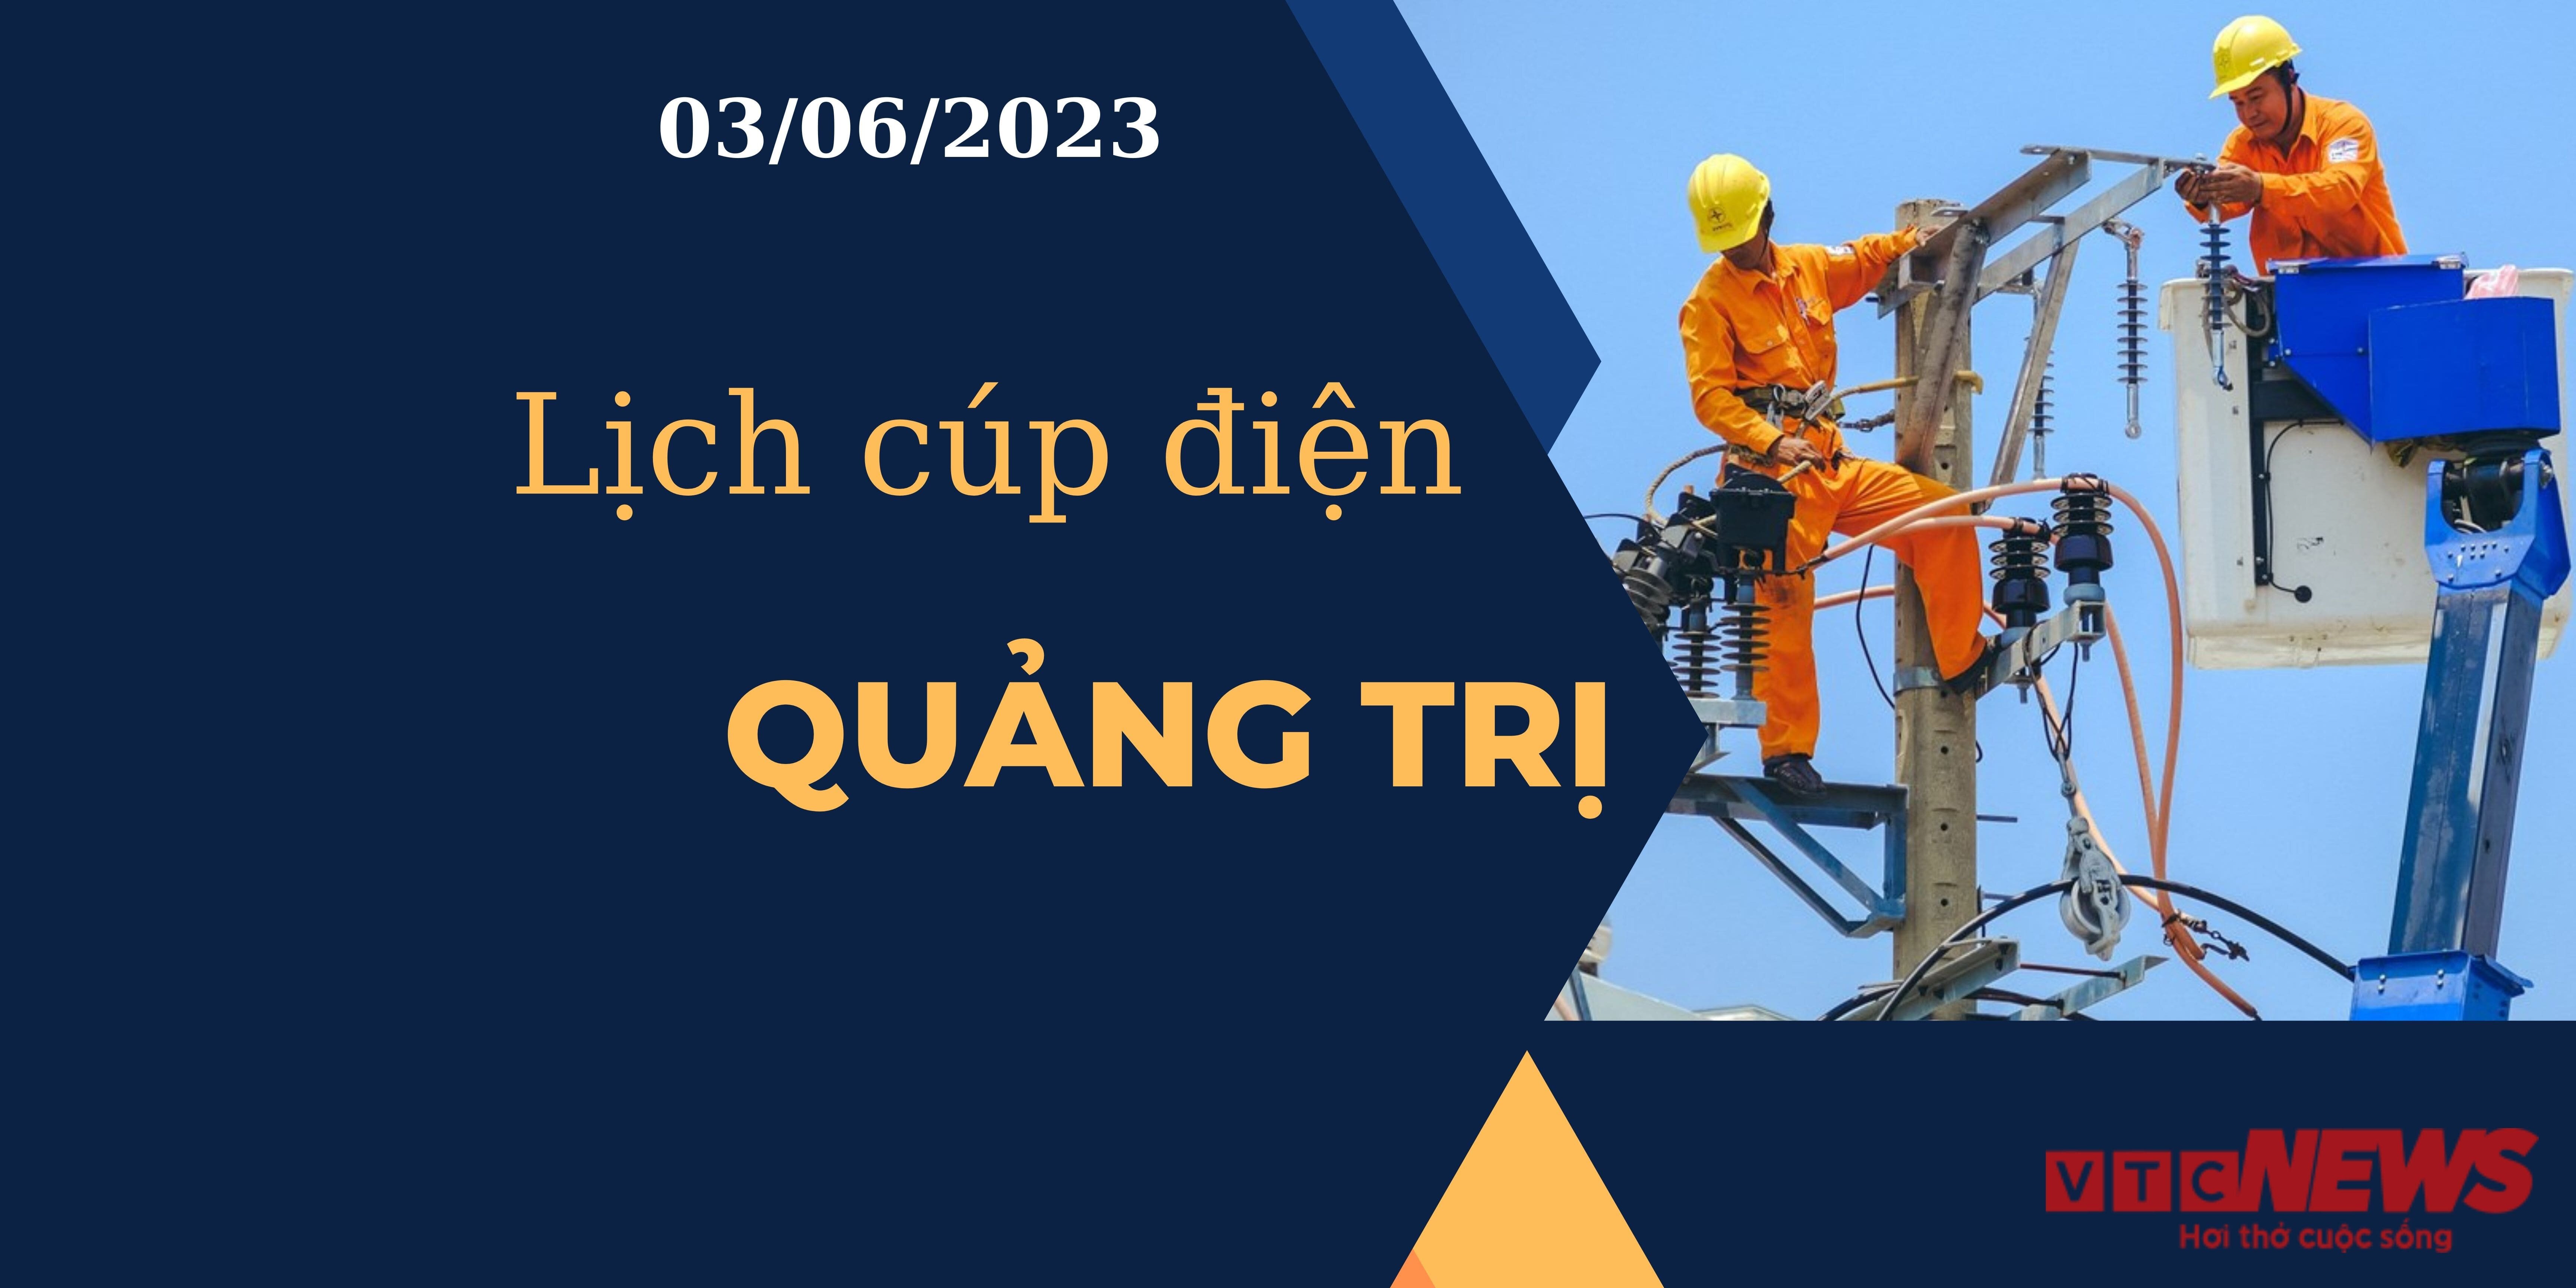 Lịch cúp điện hôm nay tại Quảng Trị ngày 03/06/2023 - 1